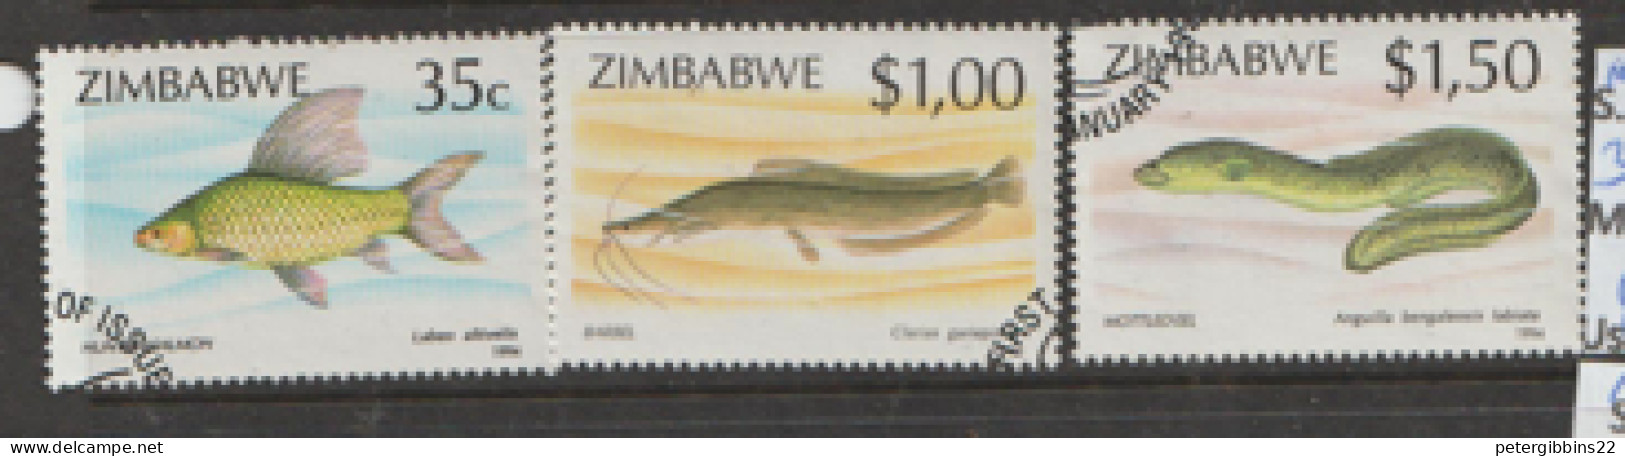 Zimbabwe  1994  SG 864,5,7  Fishes  Fine Used - Zimbabwe (1980-...)